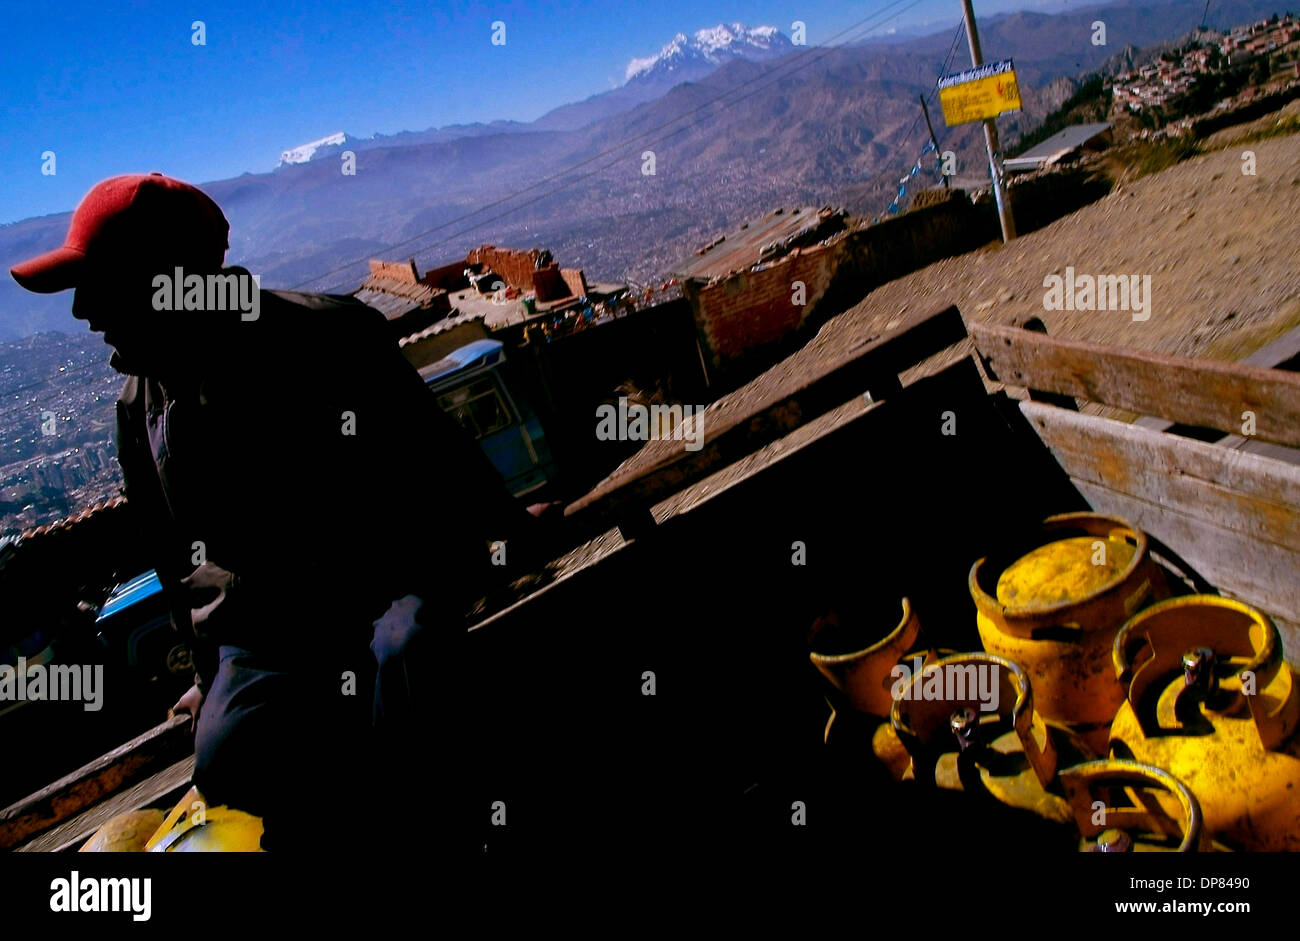 12. Mai 2006 - La Paz, Bolivien - GLP Gas Flaschen Verteilung in La Paz. Bolivien hat Lateinamerikas zweitgrößten Gasreserven aber ist eines der ärmsten Länder der Region. In den bolivianischen Häusern sind die gelben GLP-Flaschen wie Gold, denn sie sind nützlich für das Kochen, Hitze und Licht einige Häuser. Am 1. Mai 2006 verstaatlicht die bolivianische Regierung des Landes Kohlenwasserstoffe sec Stockfoto